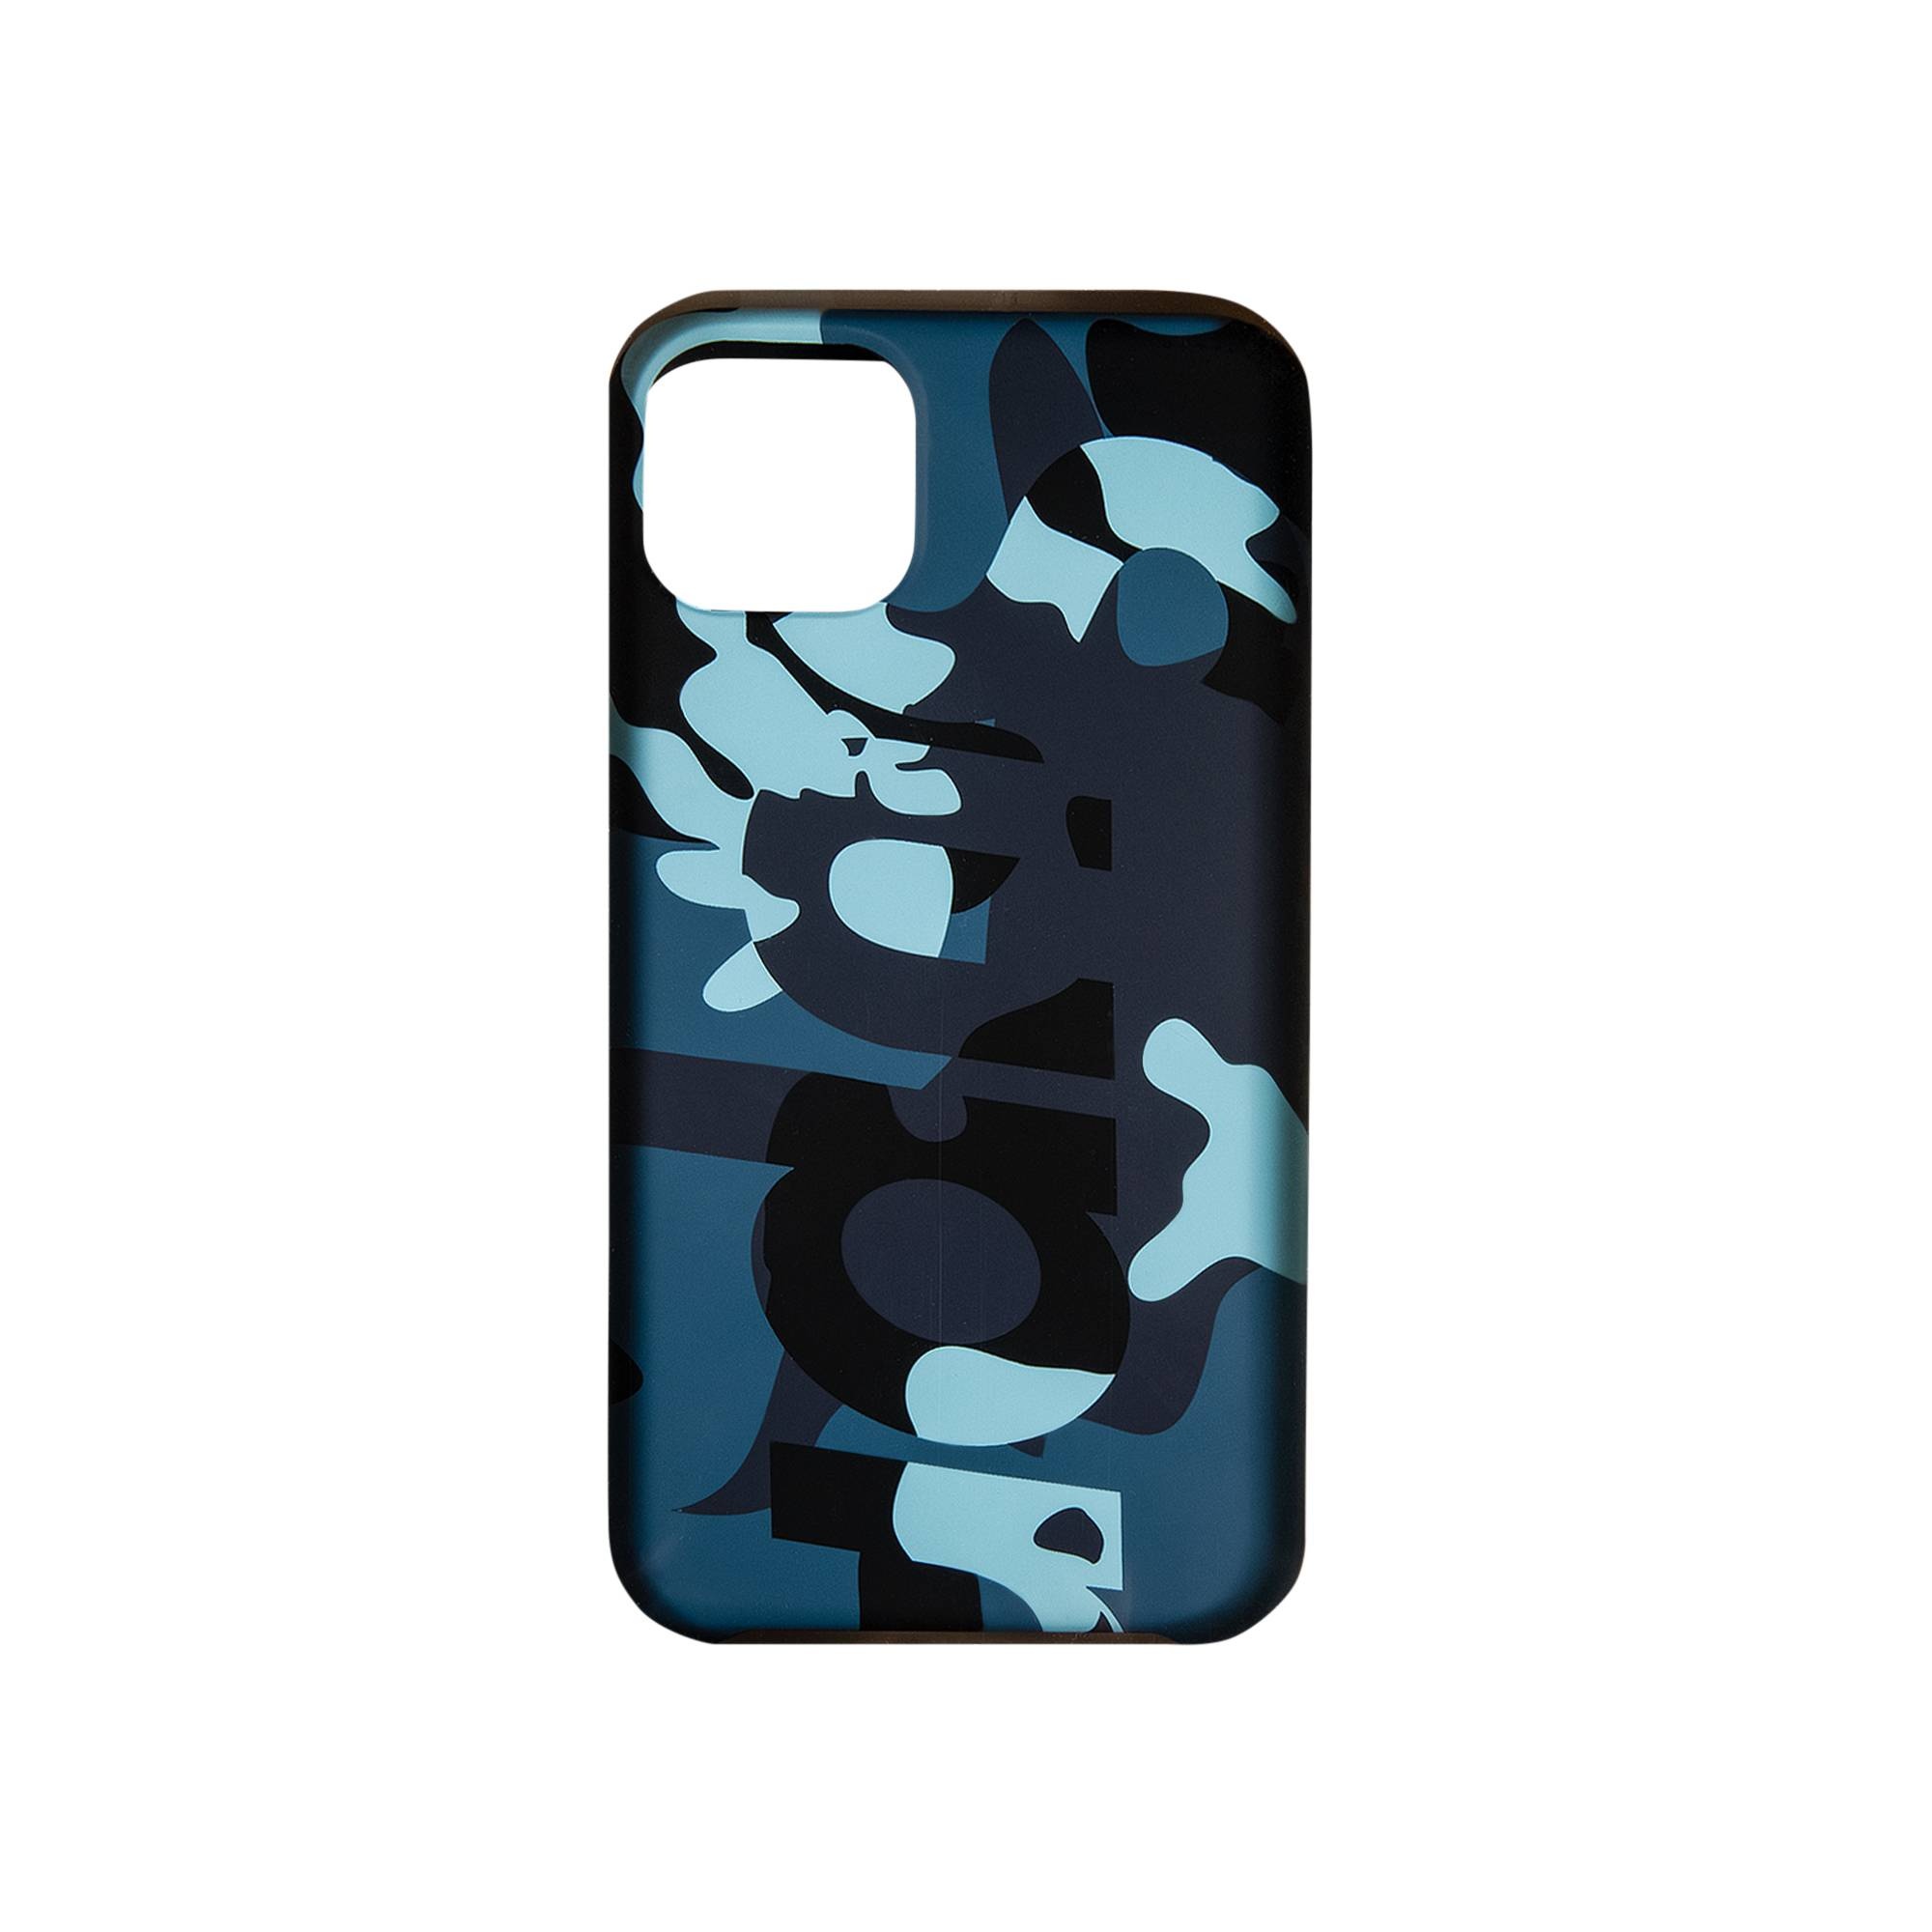 Supreme Camo iPhone 11 Pro Max Case 'Blue Camo' - 2